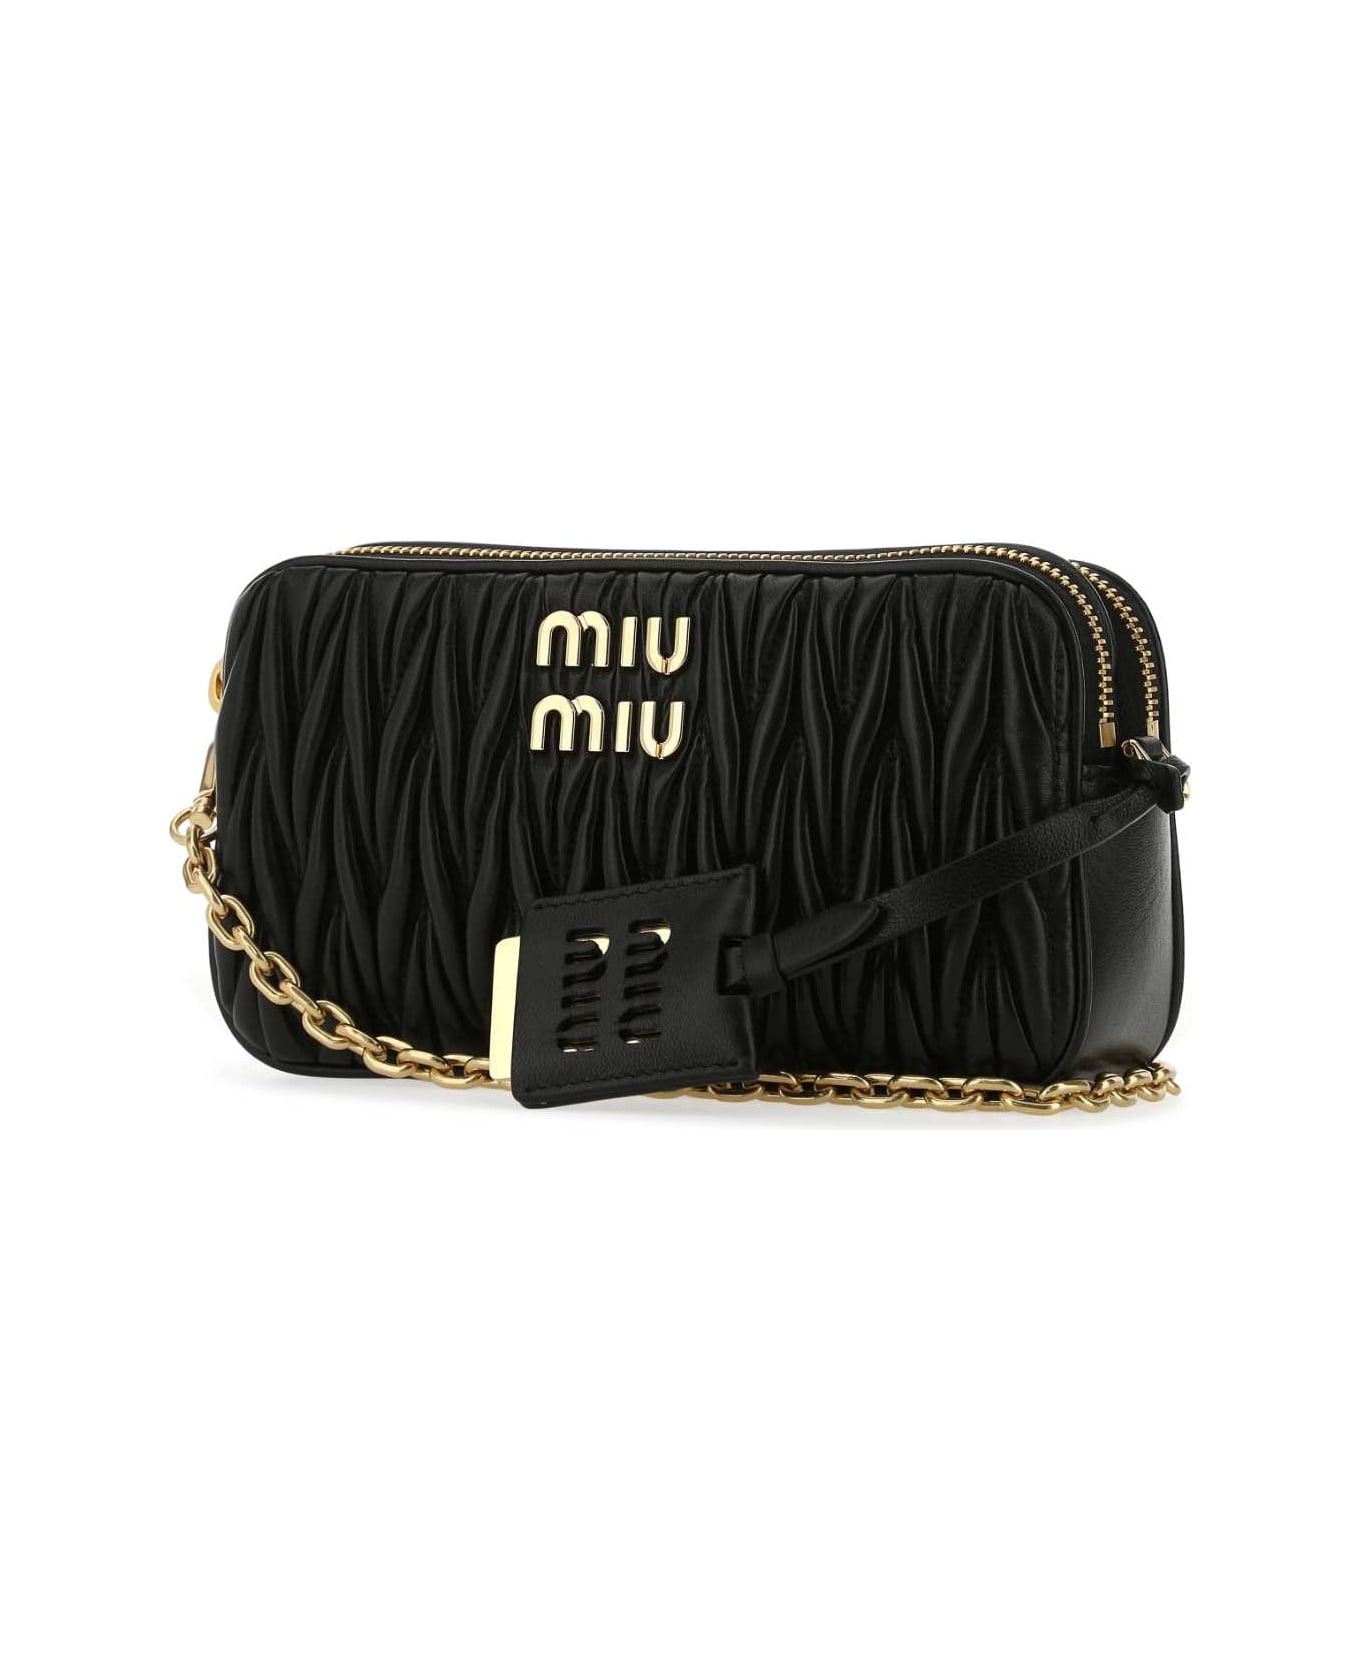 Miu Miu Black Nappa Leather Mini Crossbody Bag - F0002